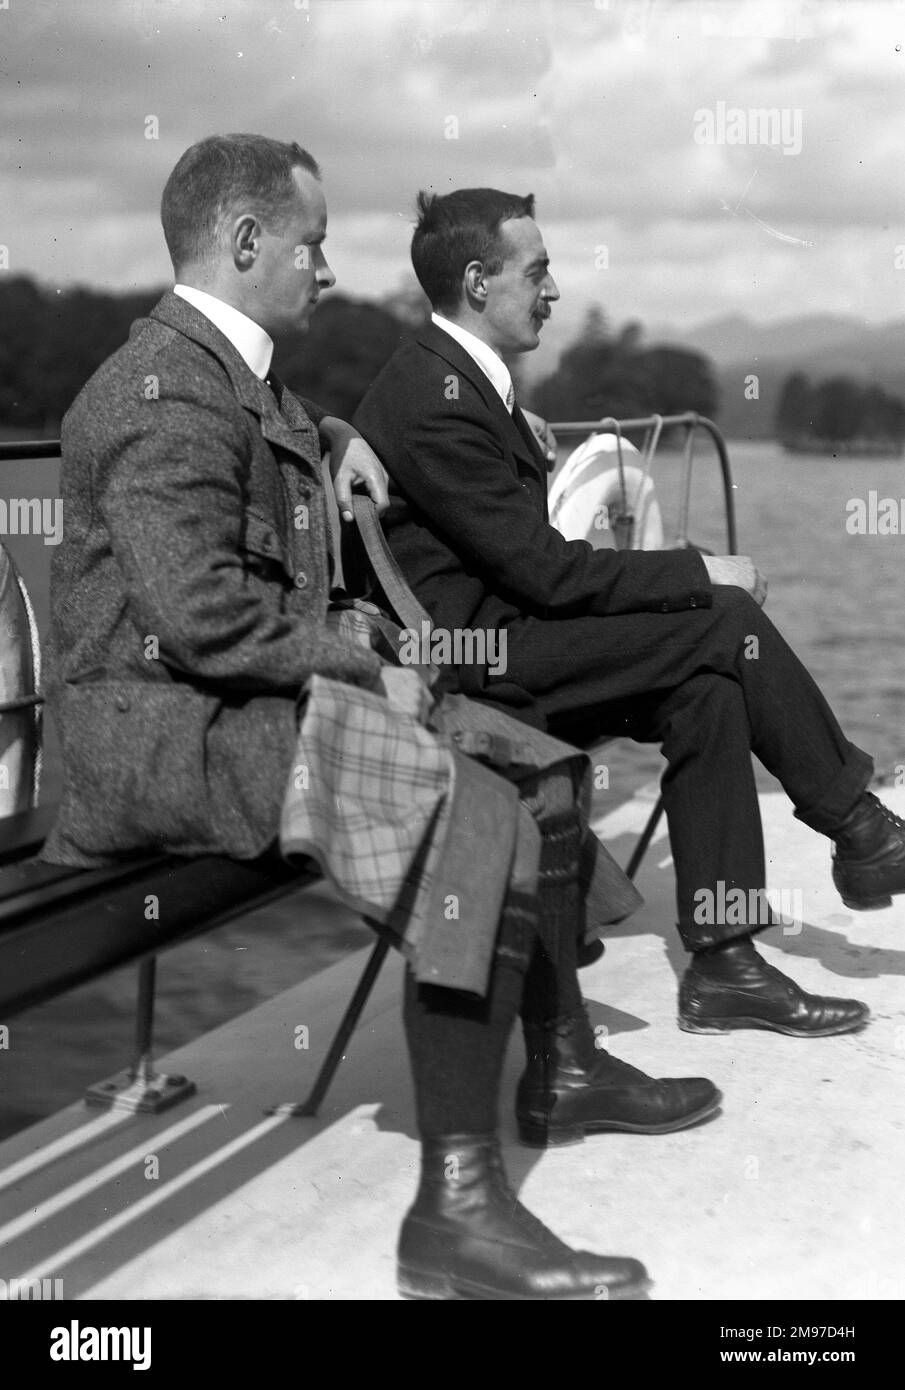 Edwardianische Gentlemen auf einem Boot im Lake District, vermutlich Coniston, zeigen eine entspannte und raffinierte Atmosphäre mit zeitgenössischem Stil. Stockfoto